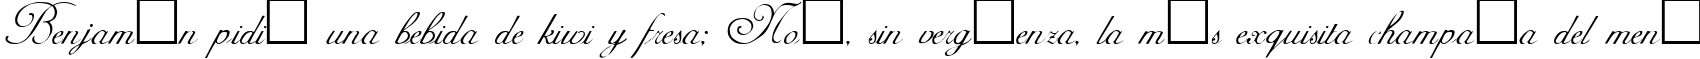 Пример написания шрифтом AdineKirnberg Regular текста на испанском